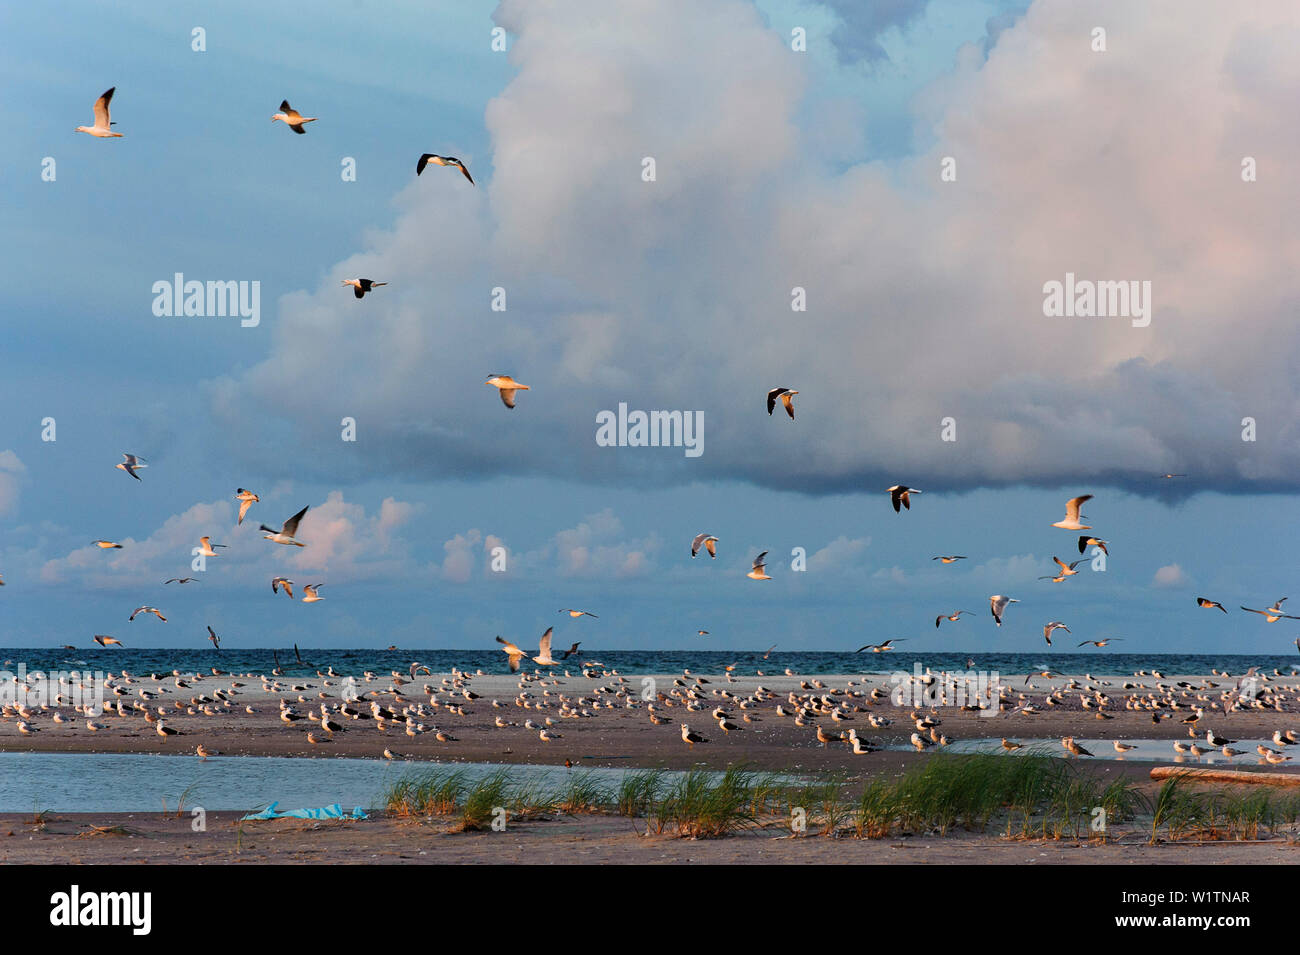 Ampia spiaggia di sabbia con molti uccelli su Gotska Sandoe, l'isola / parco nazionale si trova nel Mar Baltico a nord di Gotland., Schweden Foto Stock